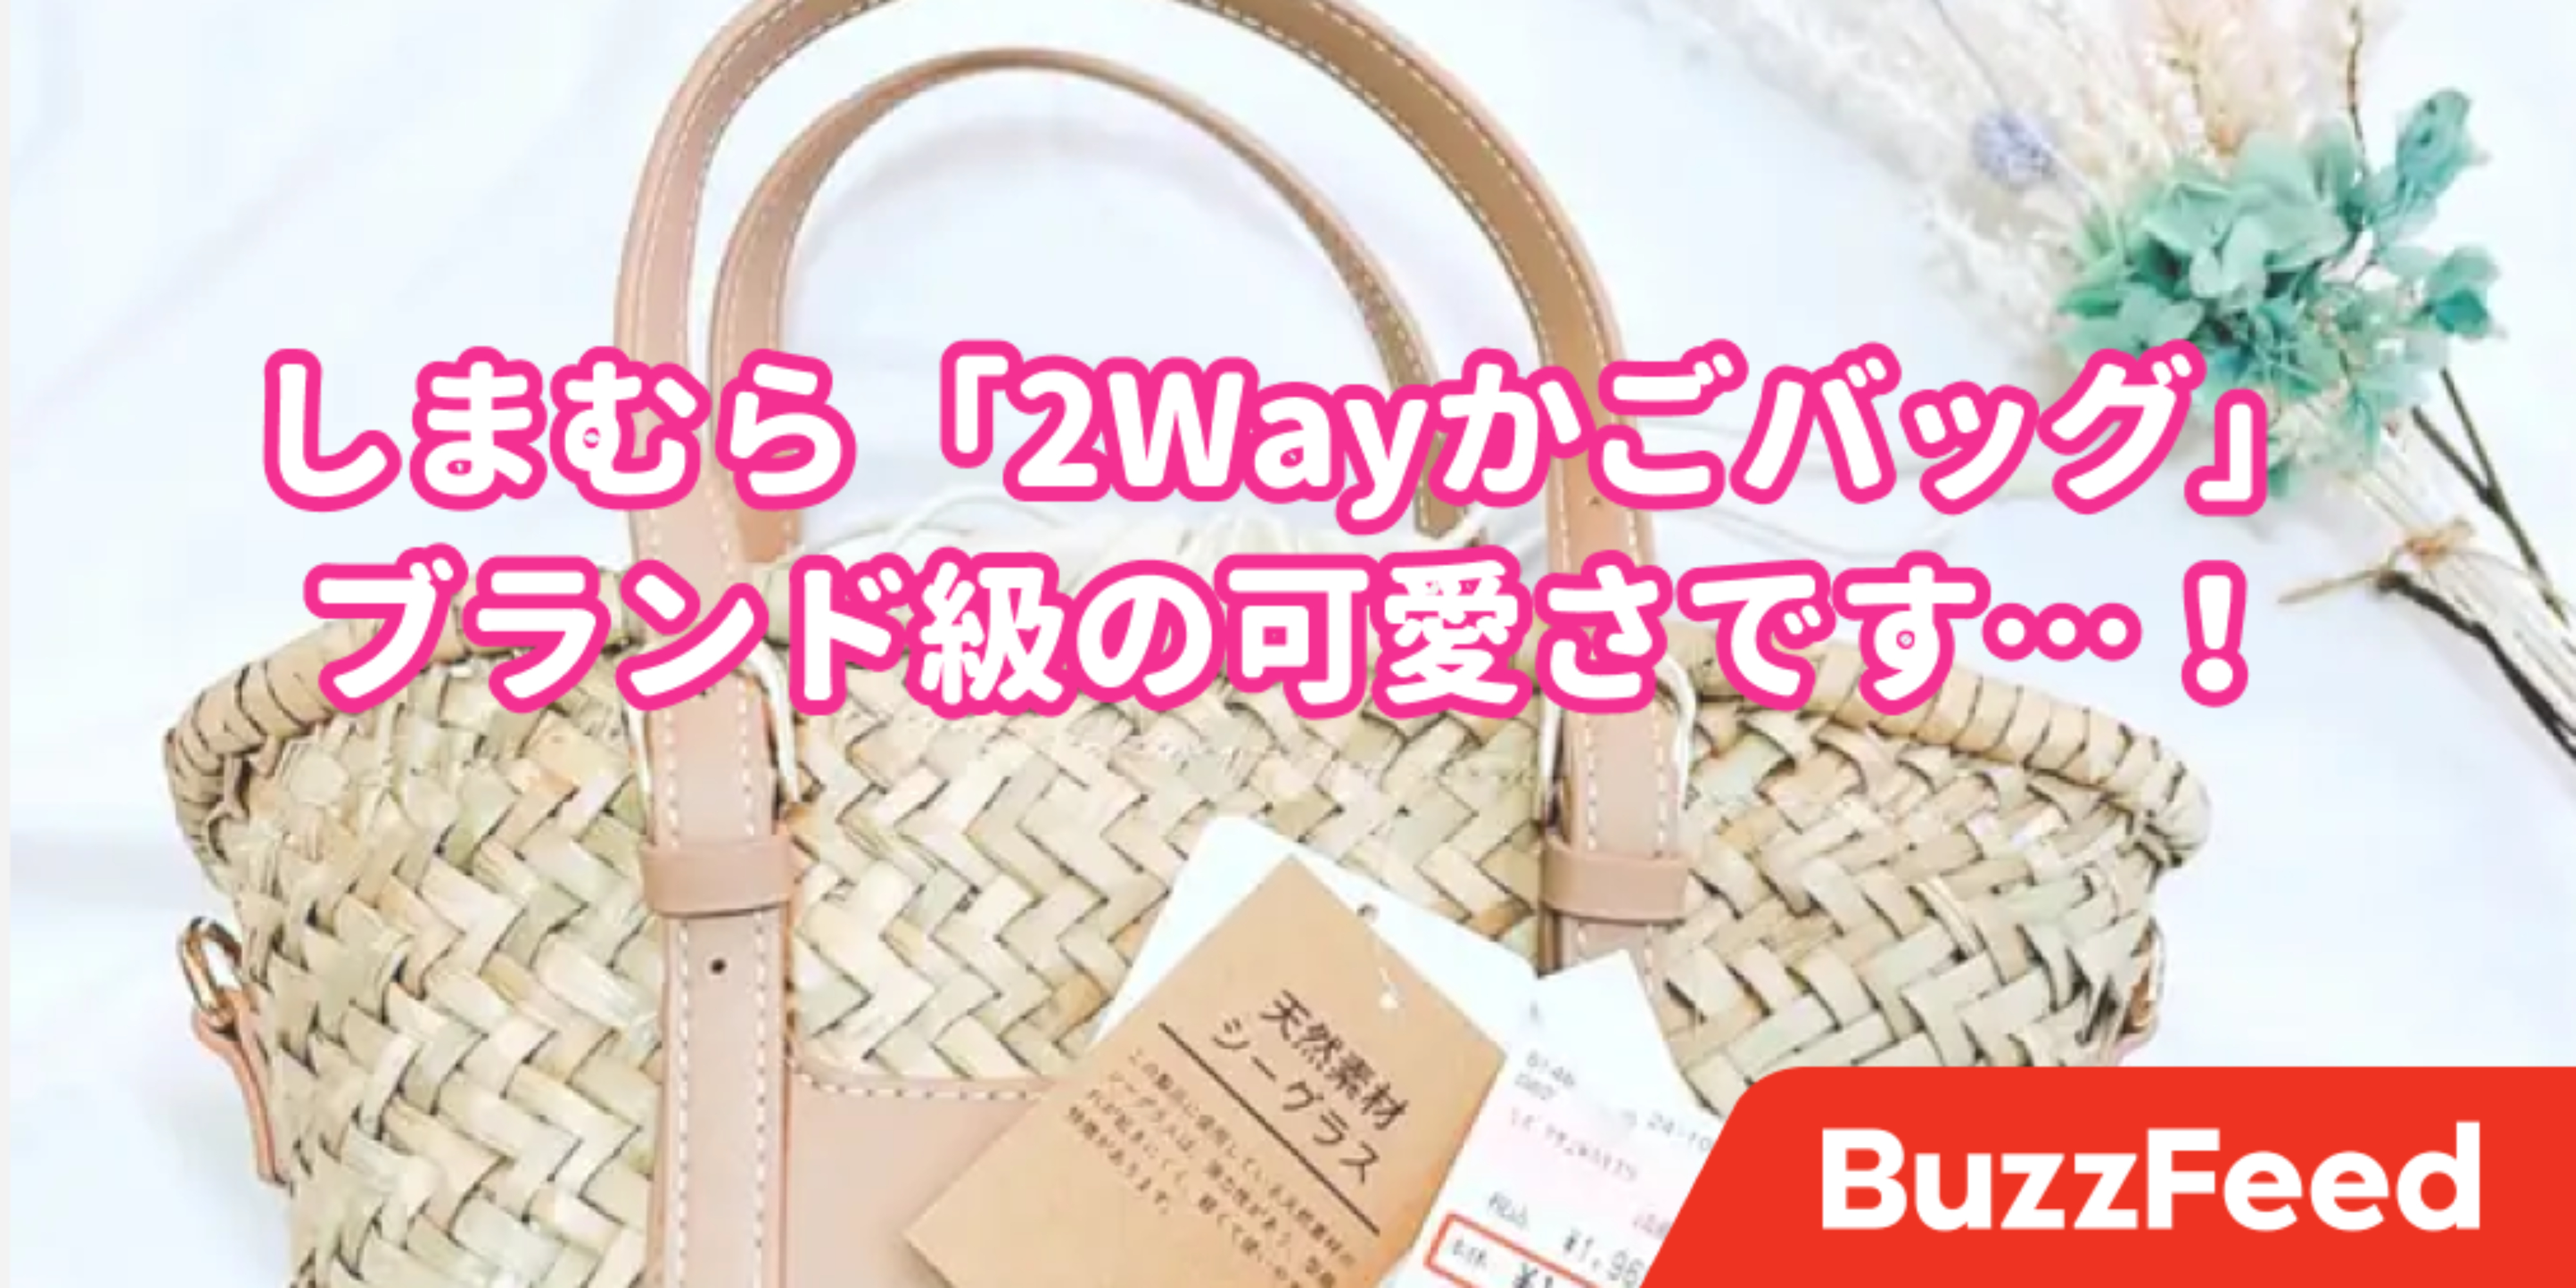 これで00円しないの しまむらの 新作かごバッグ がブランド級の可愛さ